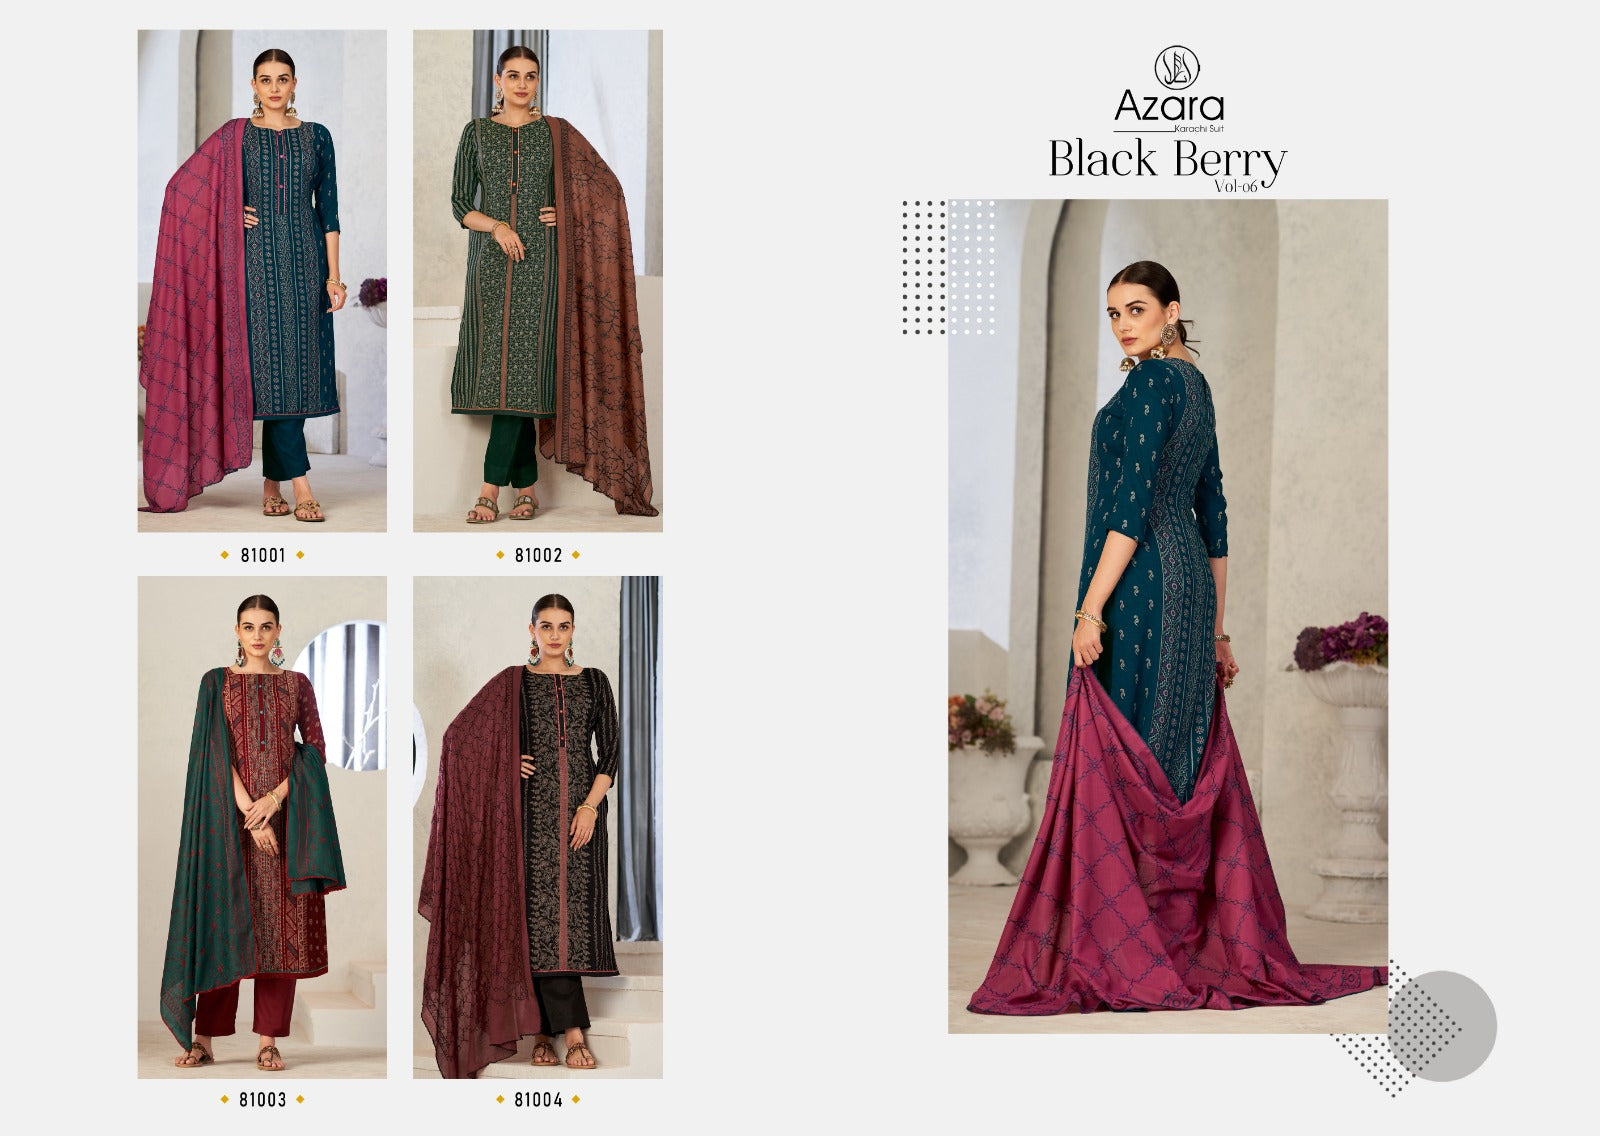 Azara karachi Suit Black Berry Vol 6 Cotton With Neck Line Work Dress Material Wholesale Catalouge - jilaniwholesalesuit